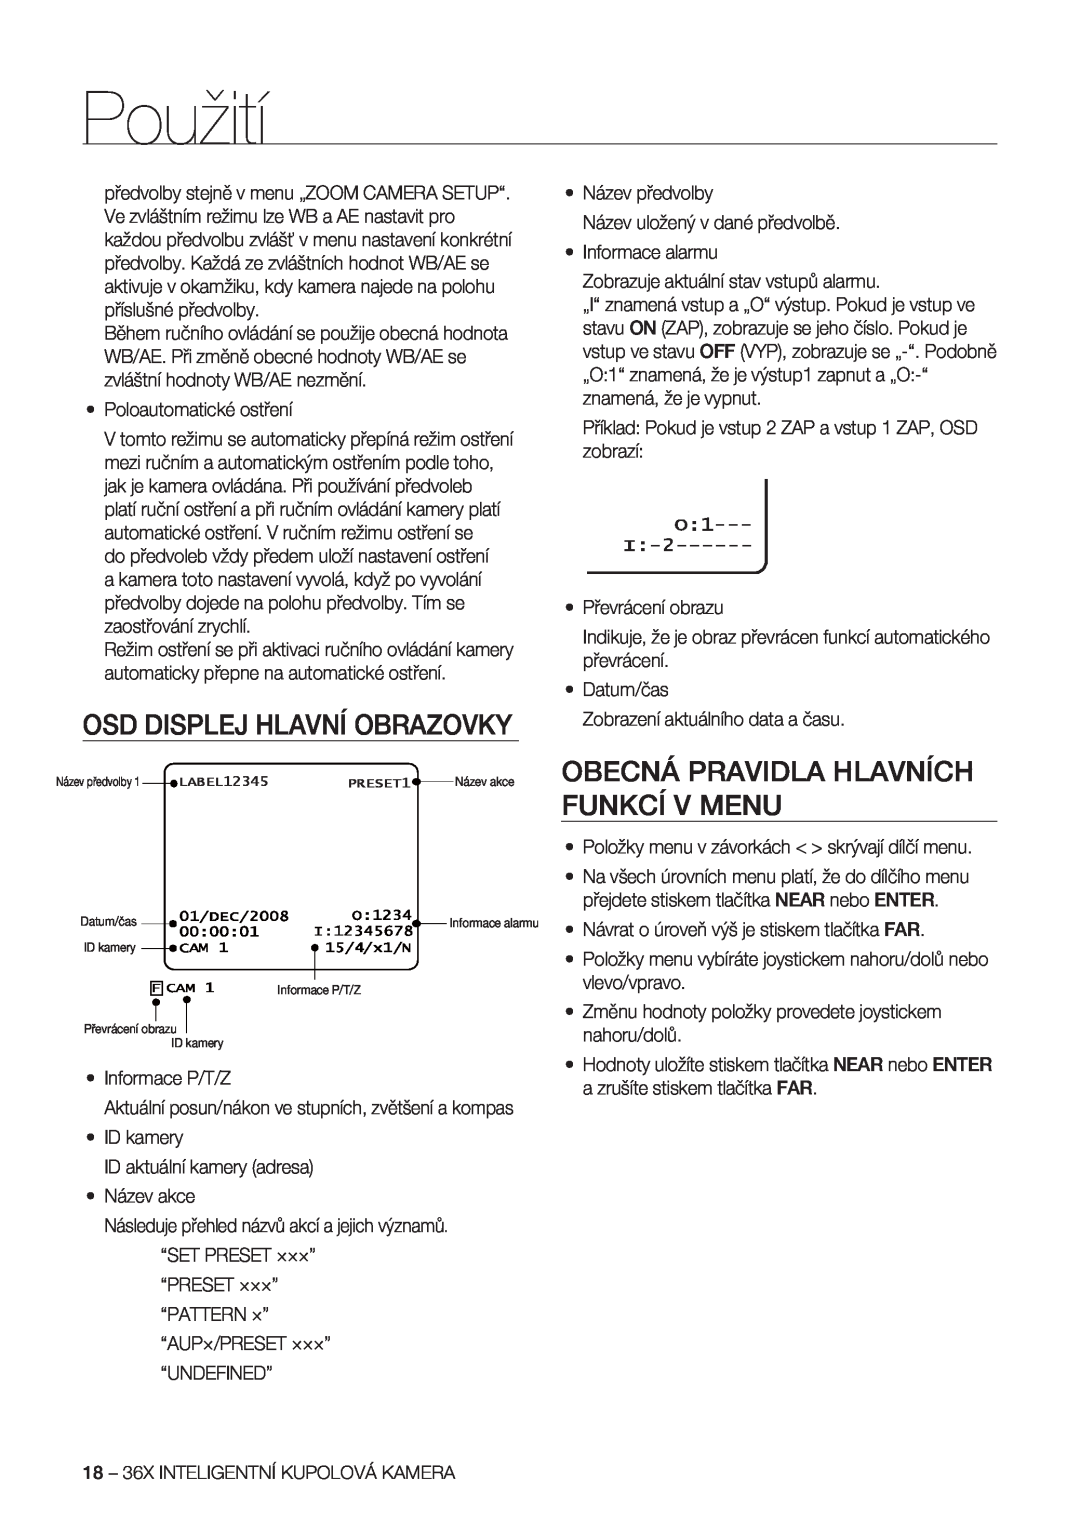 Samsung SCC-C7478P manual Osd Displej Hlavní Obrazovky, Obecná Pravidla Hlavních Funkcí V Menu, Použití, Datum/čas 